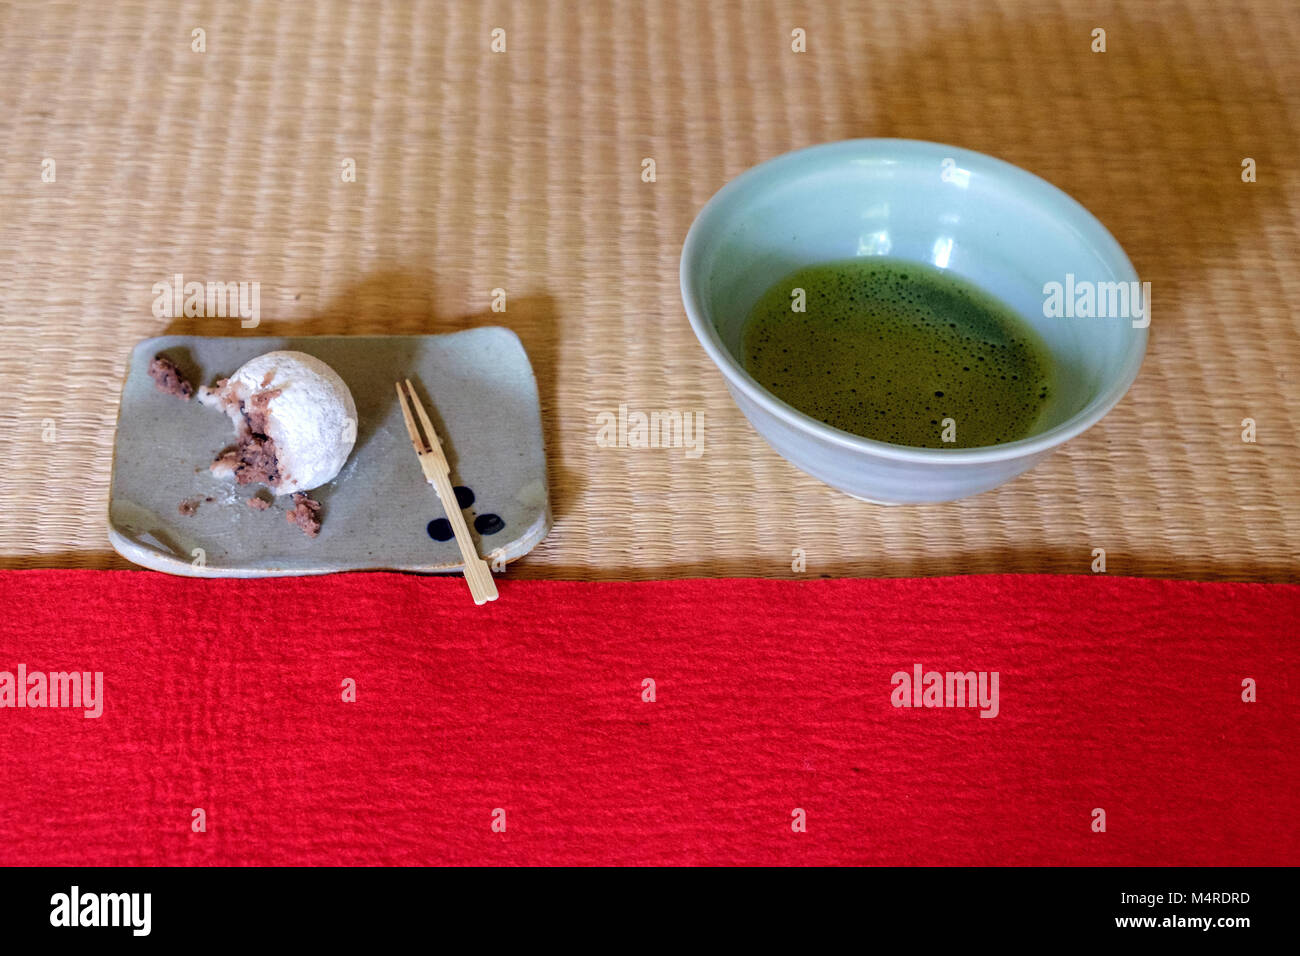 Tradizionale dolce giapponese su una piastra con una forcella di legno sulla sinistra & verde Matcha tè in una tazza di tè sulla destra. Collocato su di bambù e tappeti rossi. Foto Stock